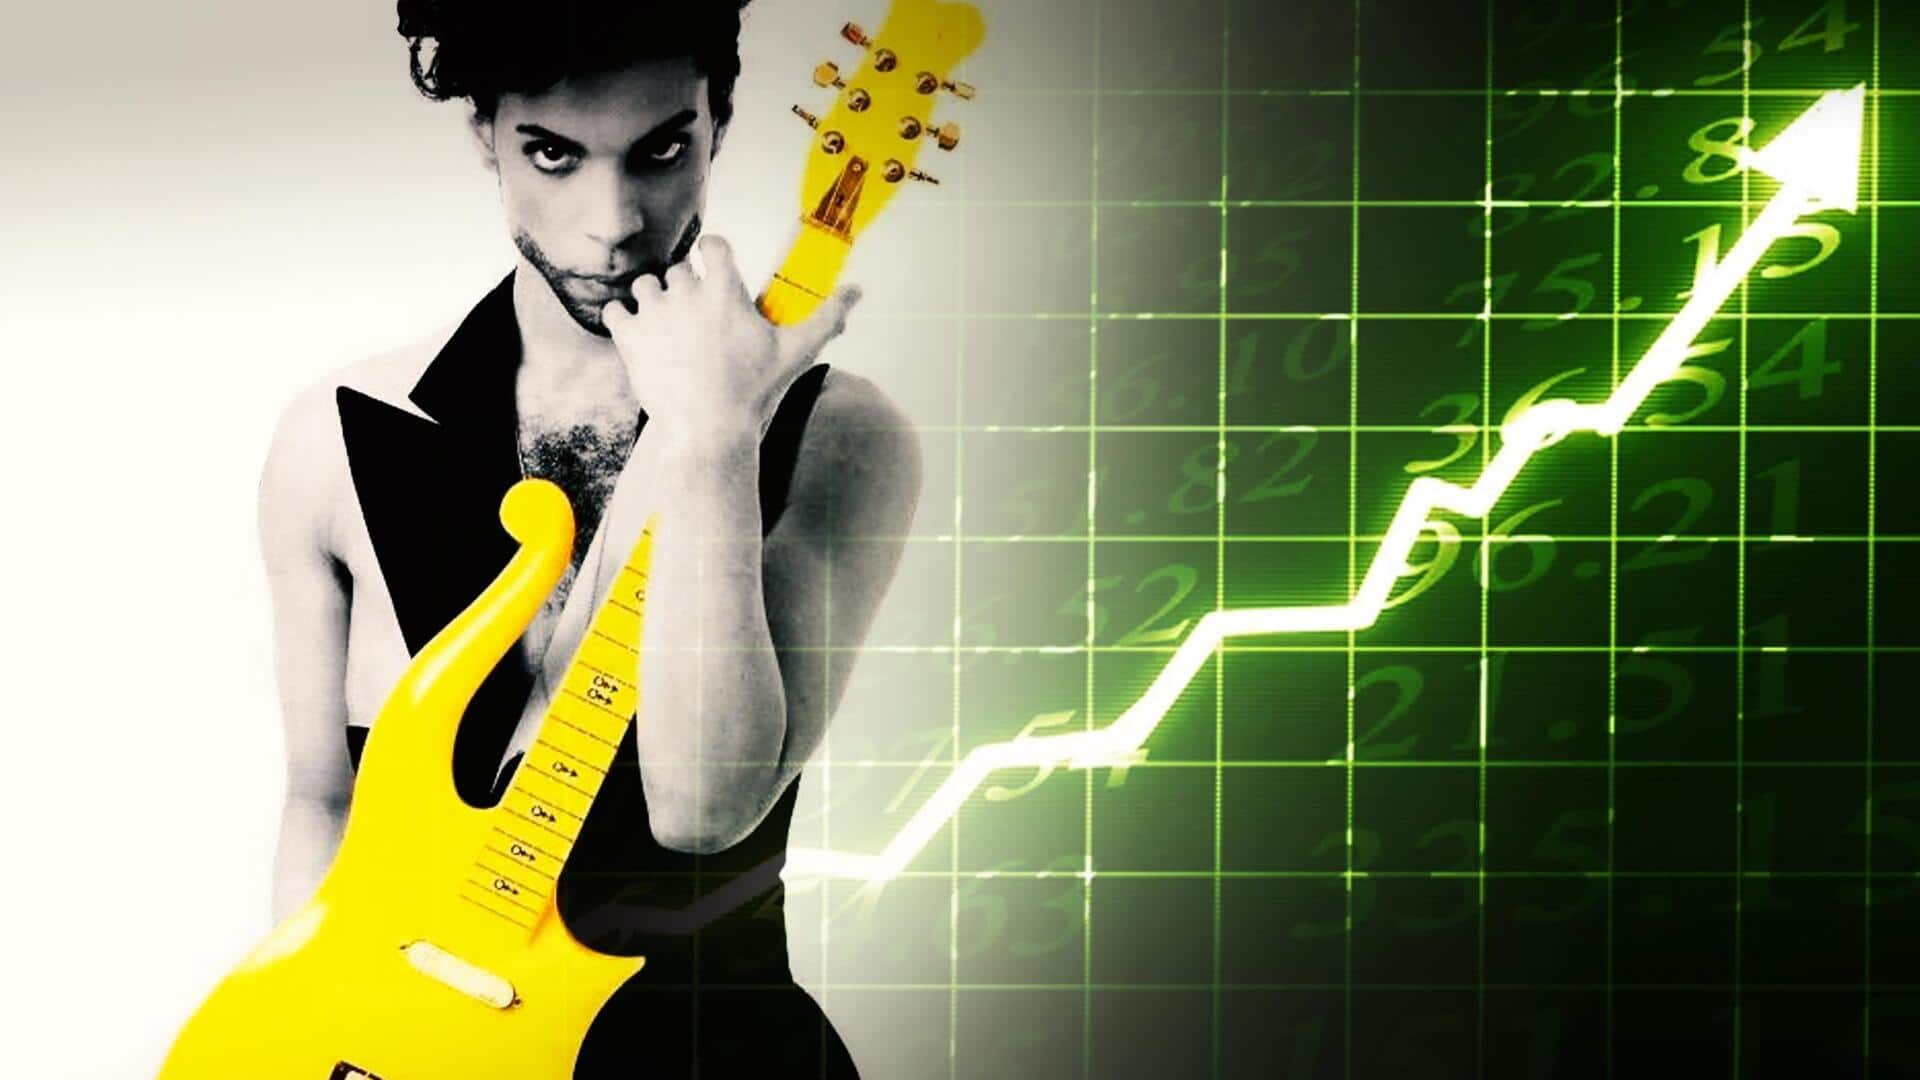 अमेरिकन पॉप स्टार के गिटार को किया जा रहा नीलाम, अनुमानित कीमत है 5 करोड़ रुपये